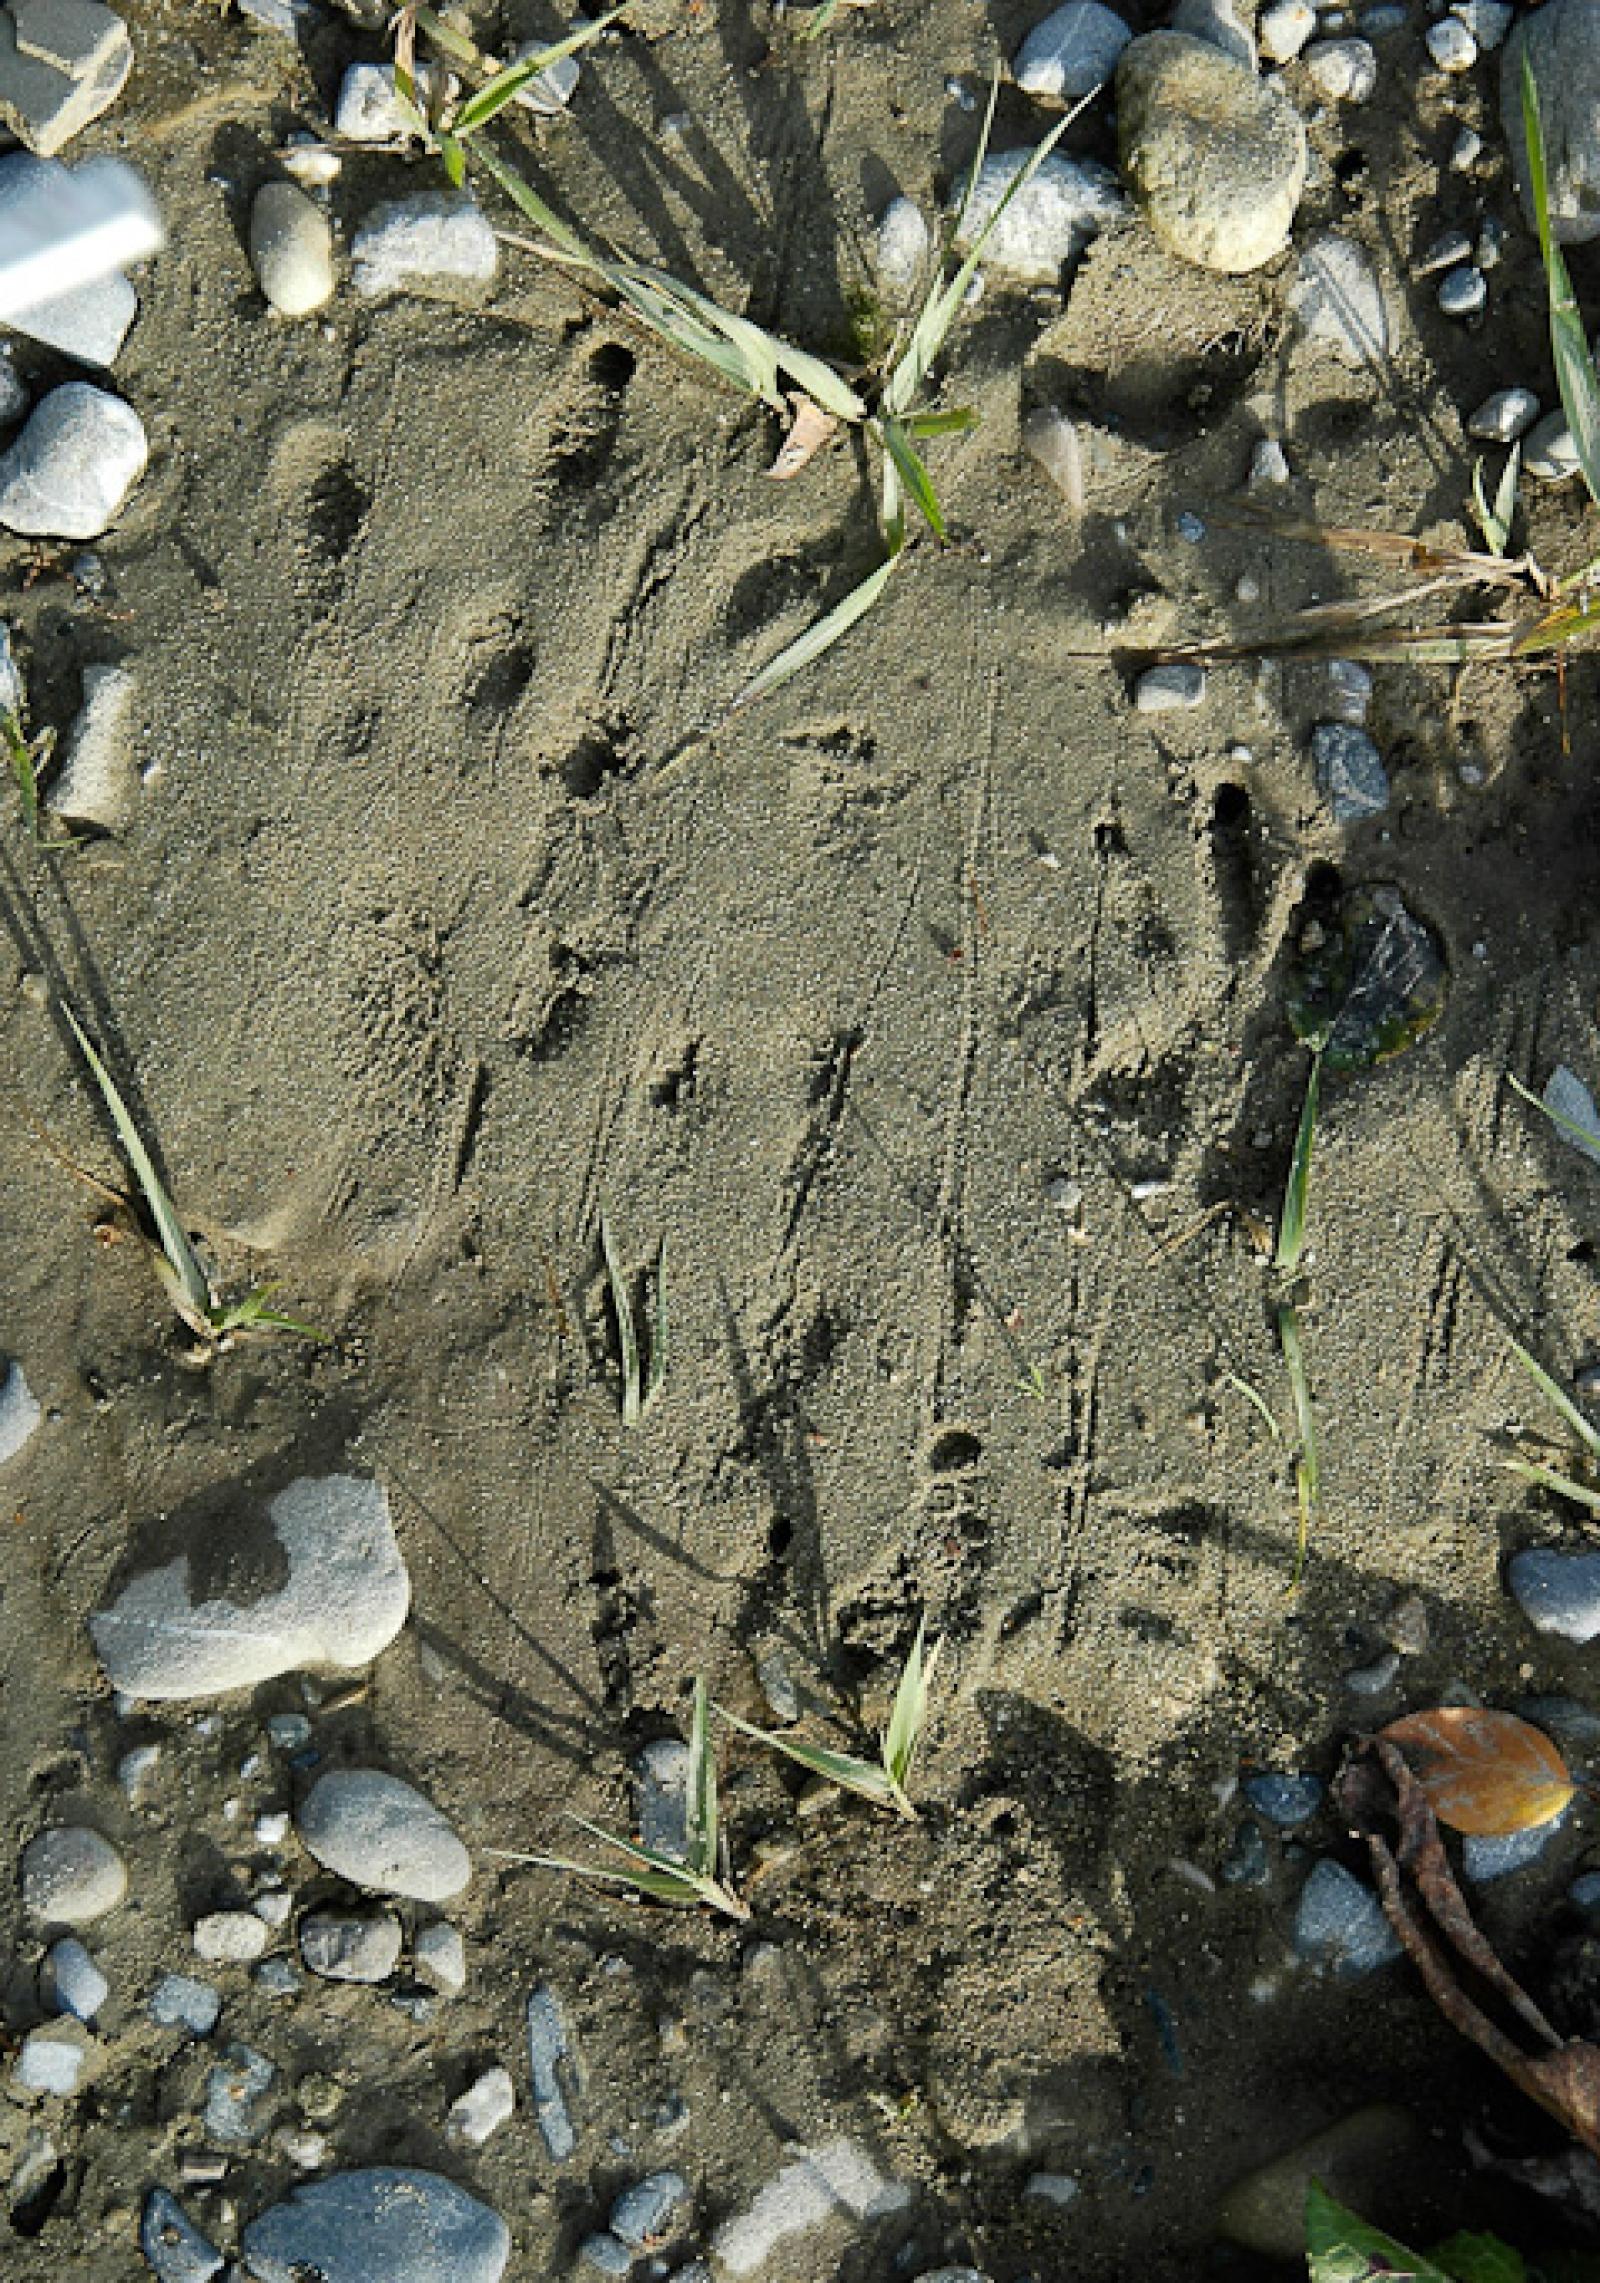  Empreintes de pattes arrière (à gauche) et avant (à droite) d’un castor dans le sable (© Christof Angst)